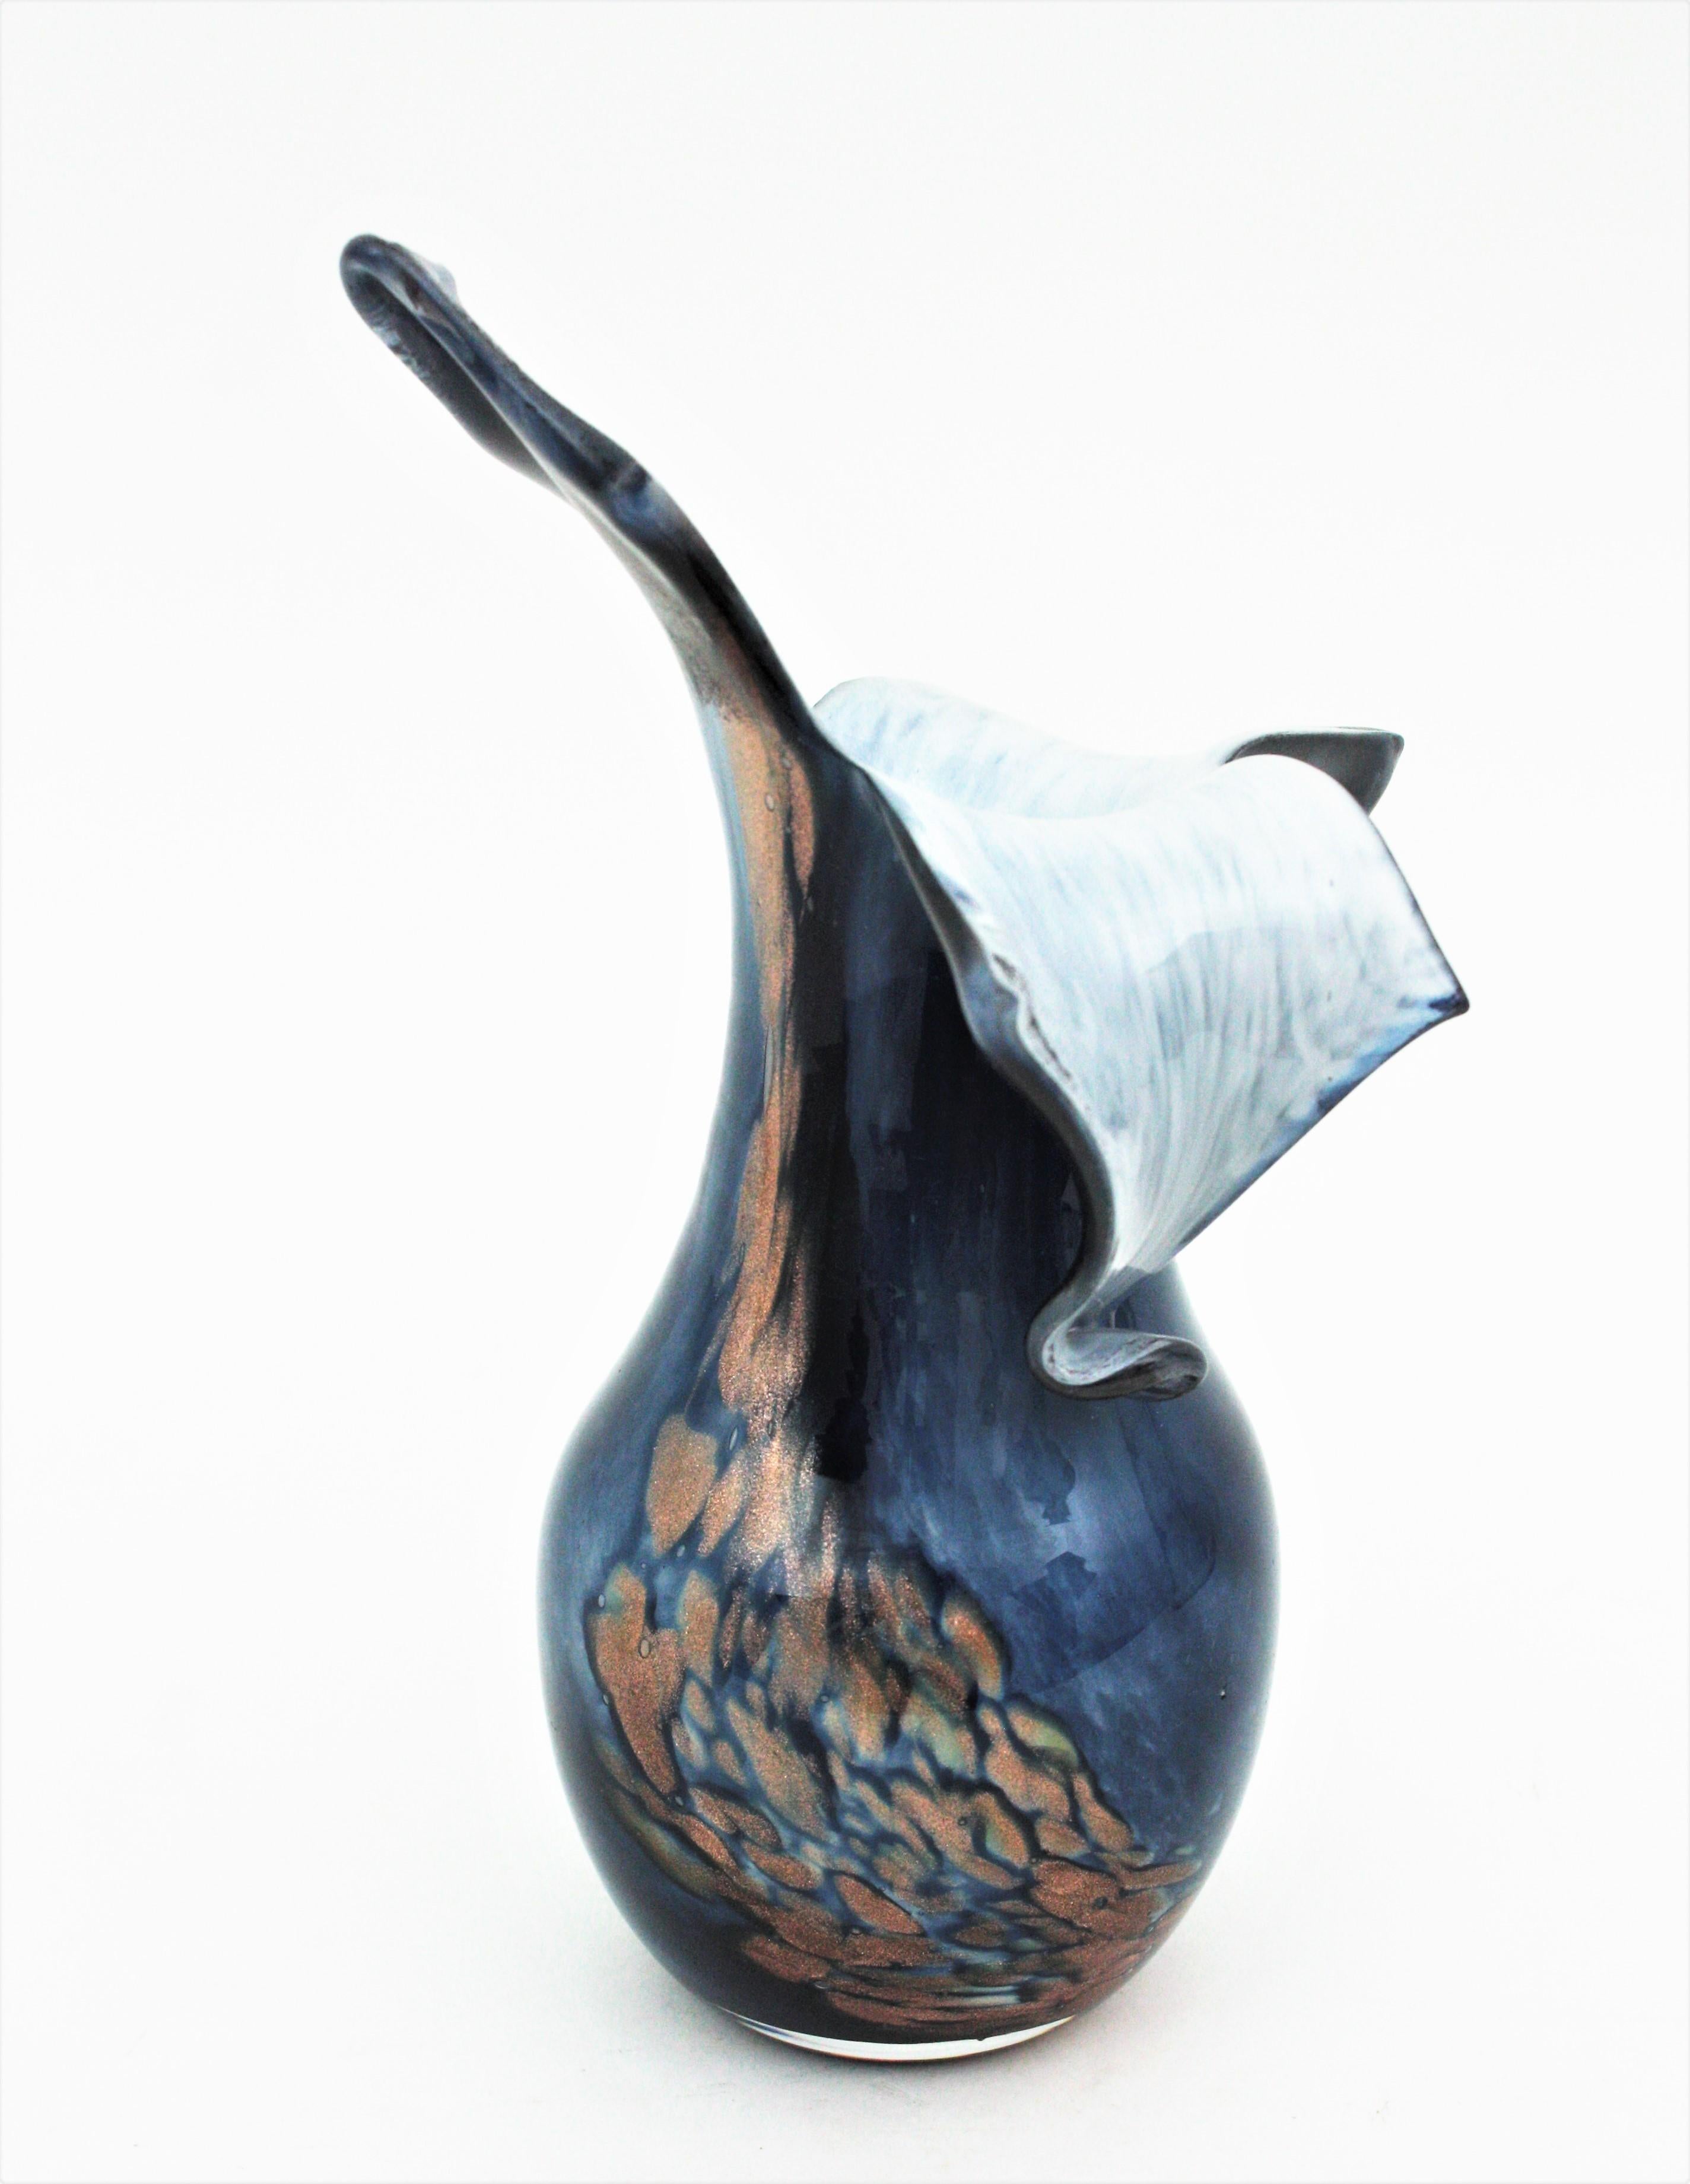 Wunderschöne mundgeblasene Glasvase mit Kupfer-Aventurin-Flecken. Italien, 1960er Jahre
Crepusculo-Design aus blauem Glas über weißem Glas mit Kupfer-Aventurin-Flecken.
Auffälliger Kreisel in freier, naturalistischer Formgebung. Der Innenteil ist